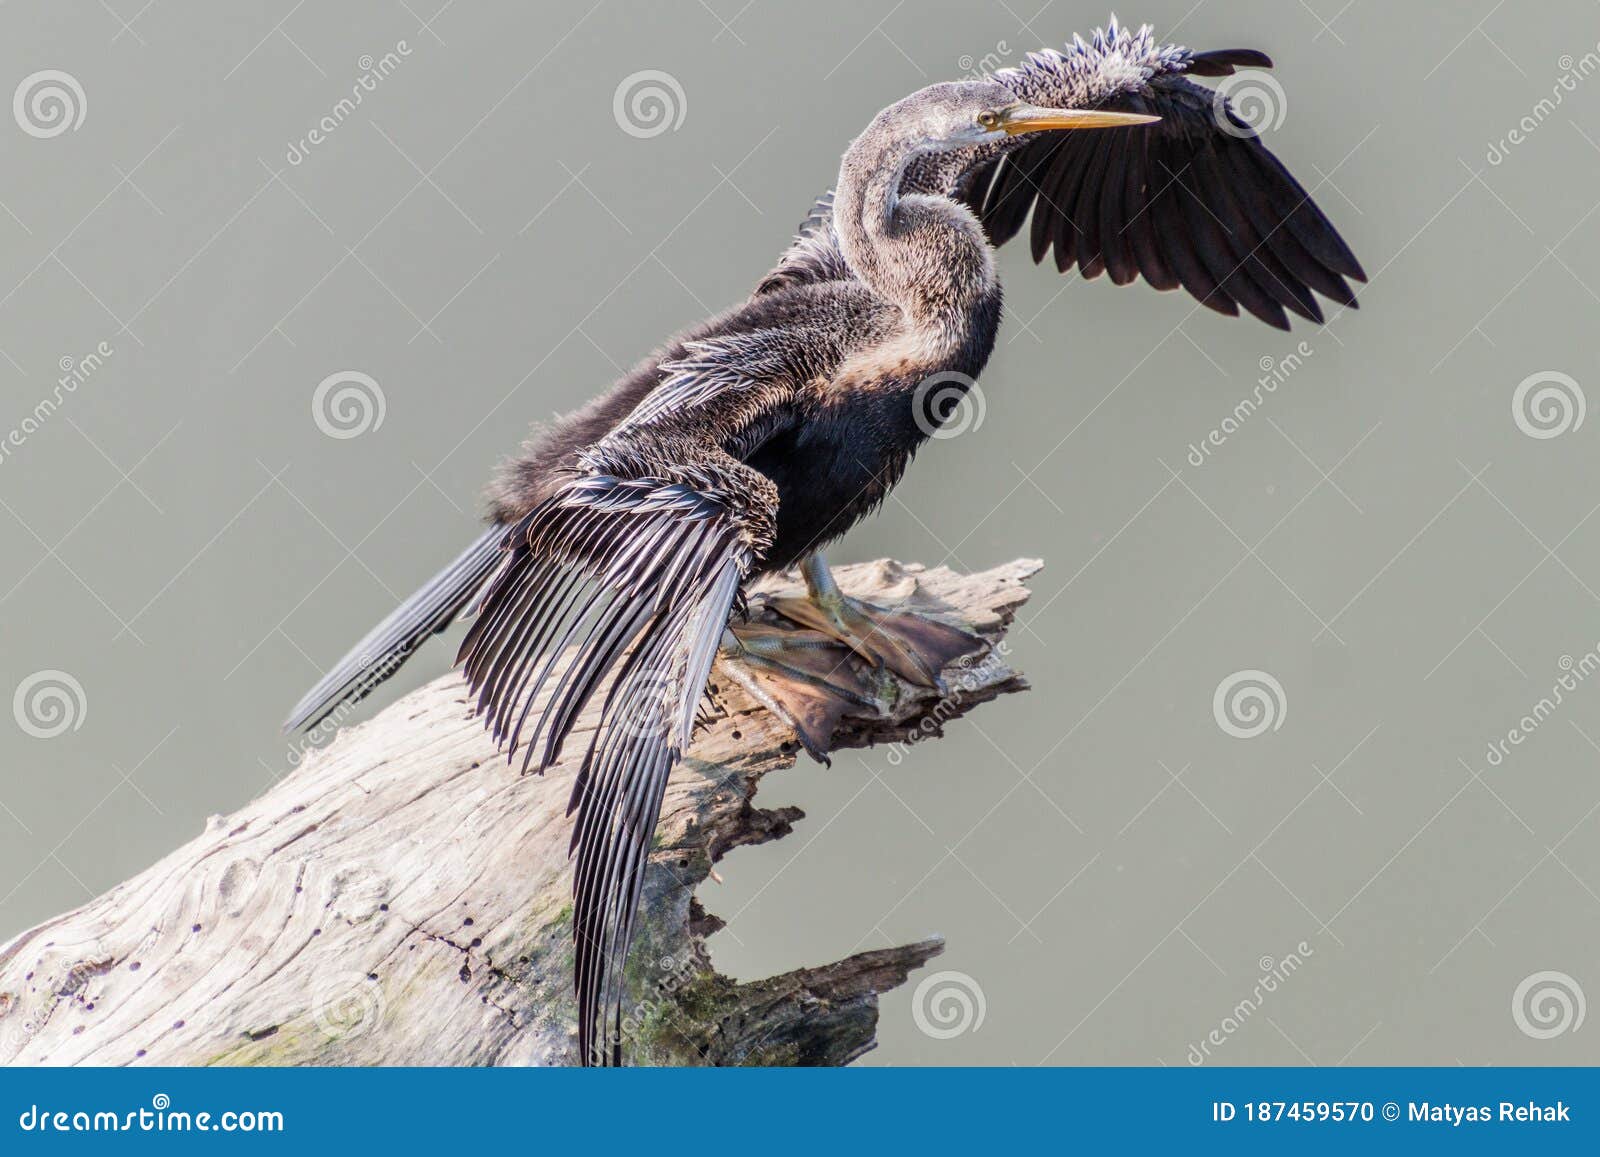 billig Se internettet Regeringsforordning Oriental Darter or Indian Darter (Anhinga Melanogaster) in Kaziranga  National Park, Ind Stock Photo - Image of wings, famous: 187459570